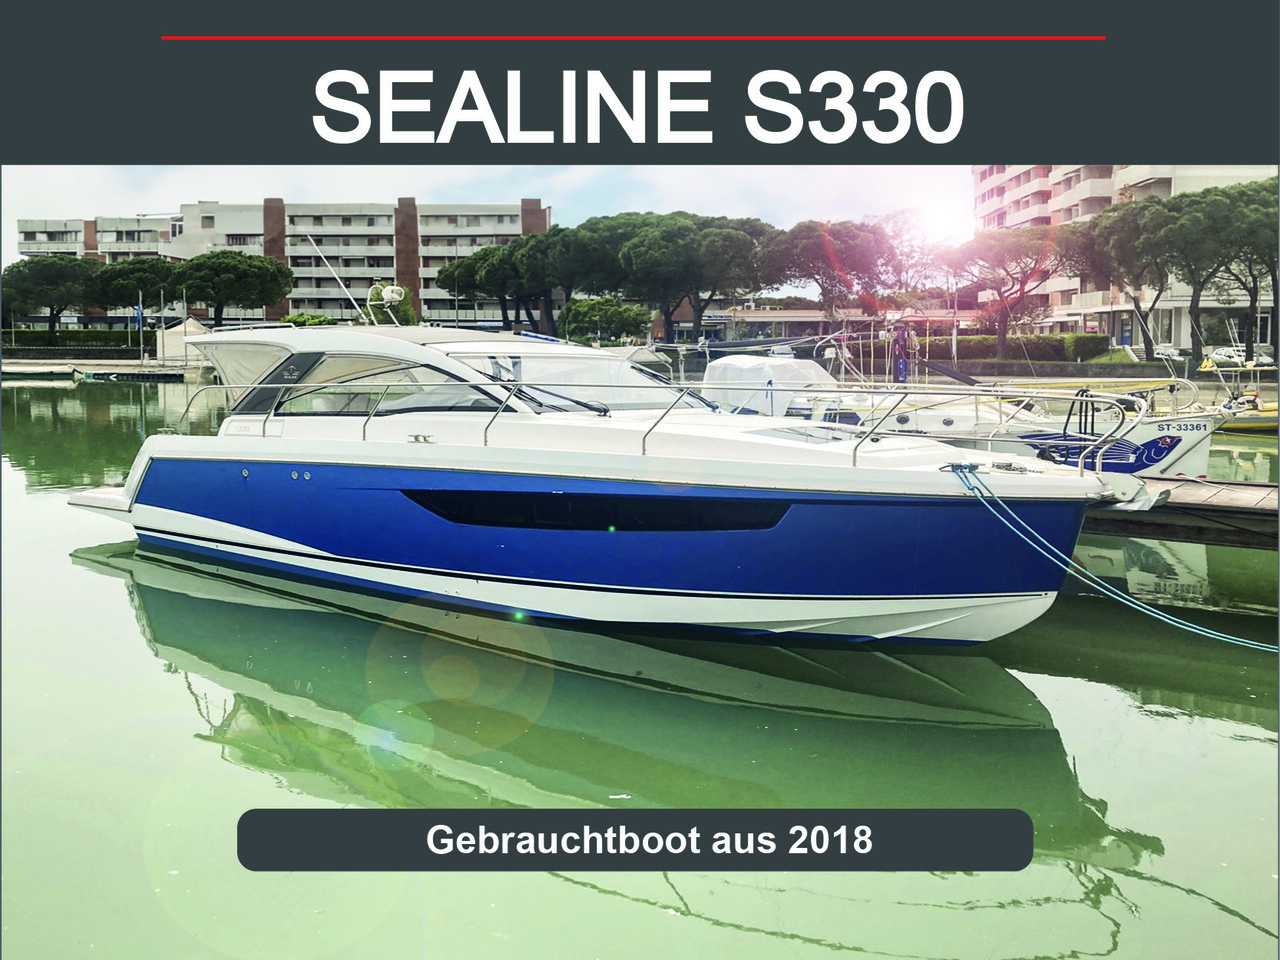 Sealine S330